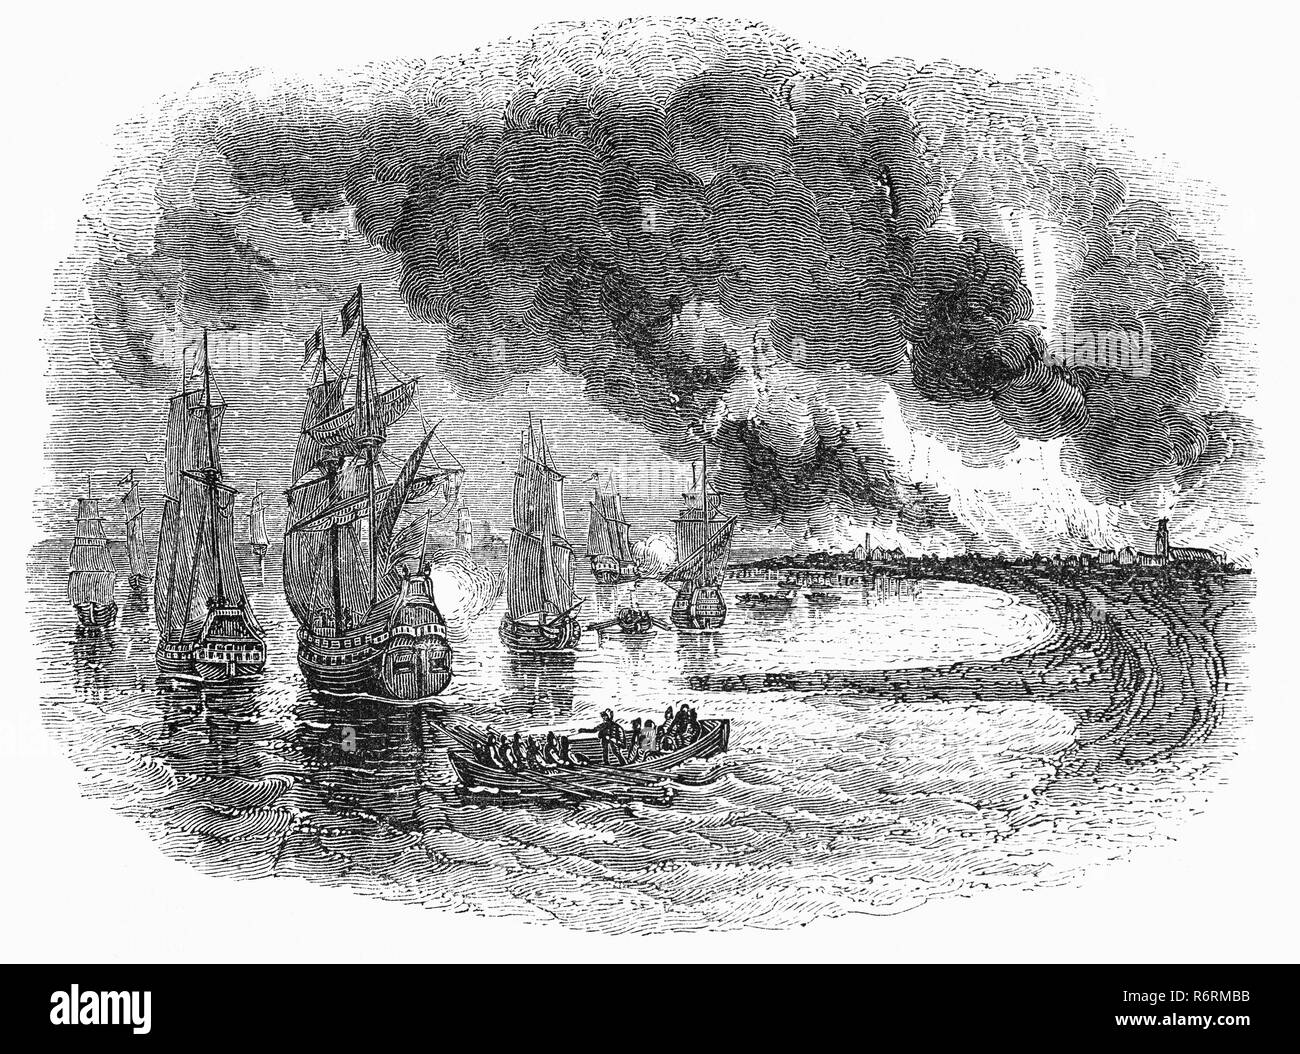 Le raid sur la Medway, pendant la Deuxième Guerre Anglo-néerlandaise en juin 1667, était une attaque réussie menée par la marine néerlandaise sur les cuirassés anglais alors que la plupart étaient presque sans armes et sans pilote, désarmé à la flotte au large des ancrages de Chatham Dockyard et Gillingham dans le comté du Kent. Les Néerlandais capturé la ville de Sheerness, puis ont navigué dans la rivière Medway à Chatham et Gillingham, où ils ont eu fortifications avec tir de canon, brûlés ou capturé trois cuirassés et dix autres vaisseaux de ligne, et capturé et remorqué le navire amiral de la flotte anglaise, le HMS Royal Charles. Banque D'Images